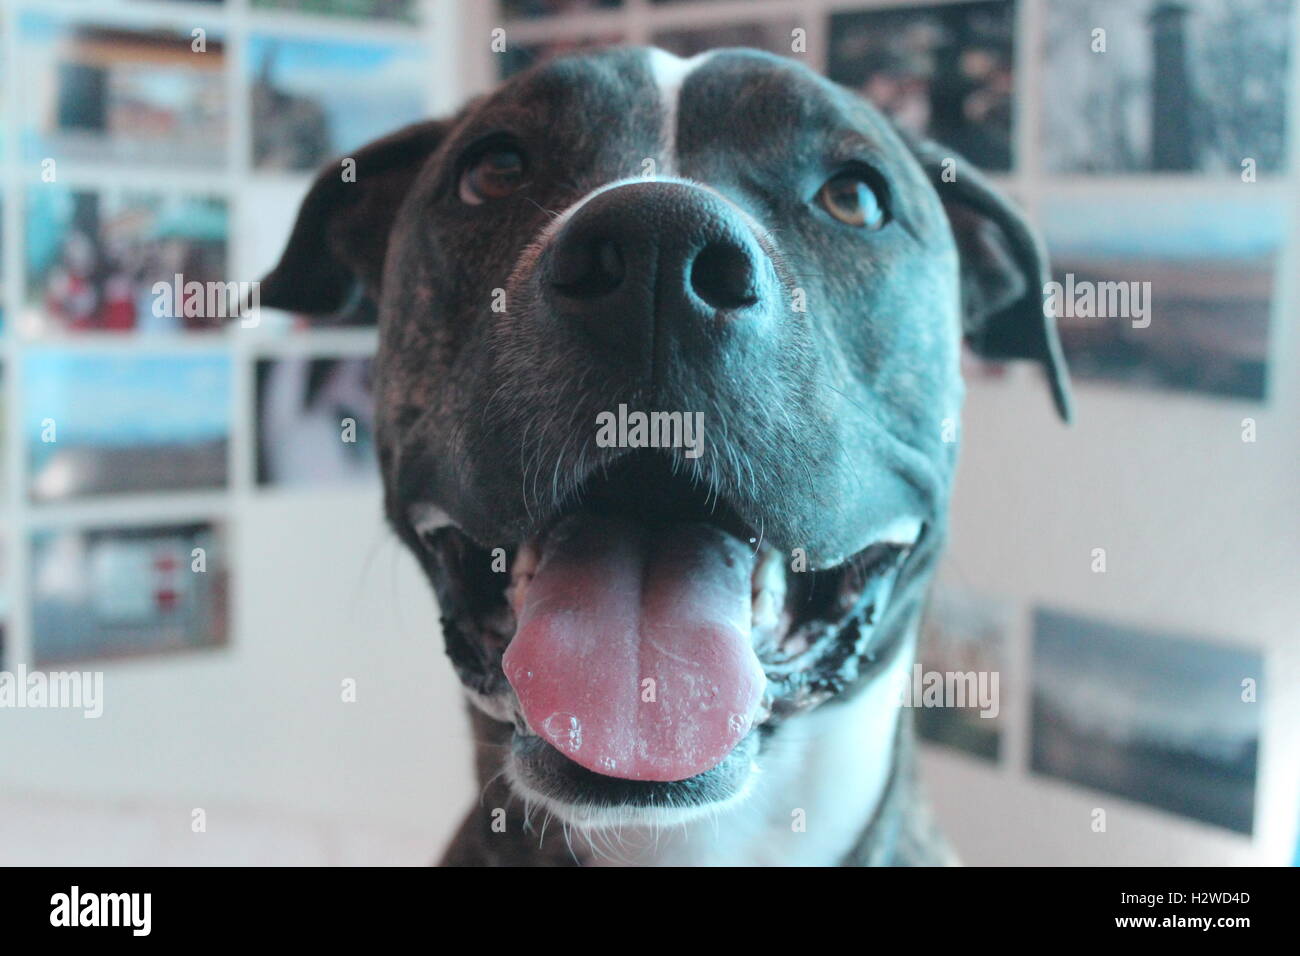 a happy dog Stock Photo